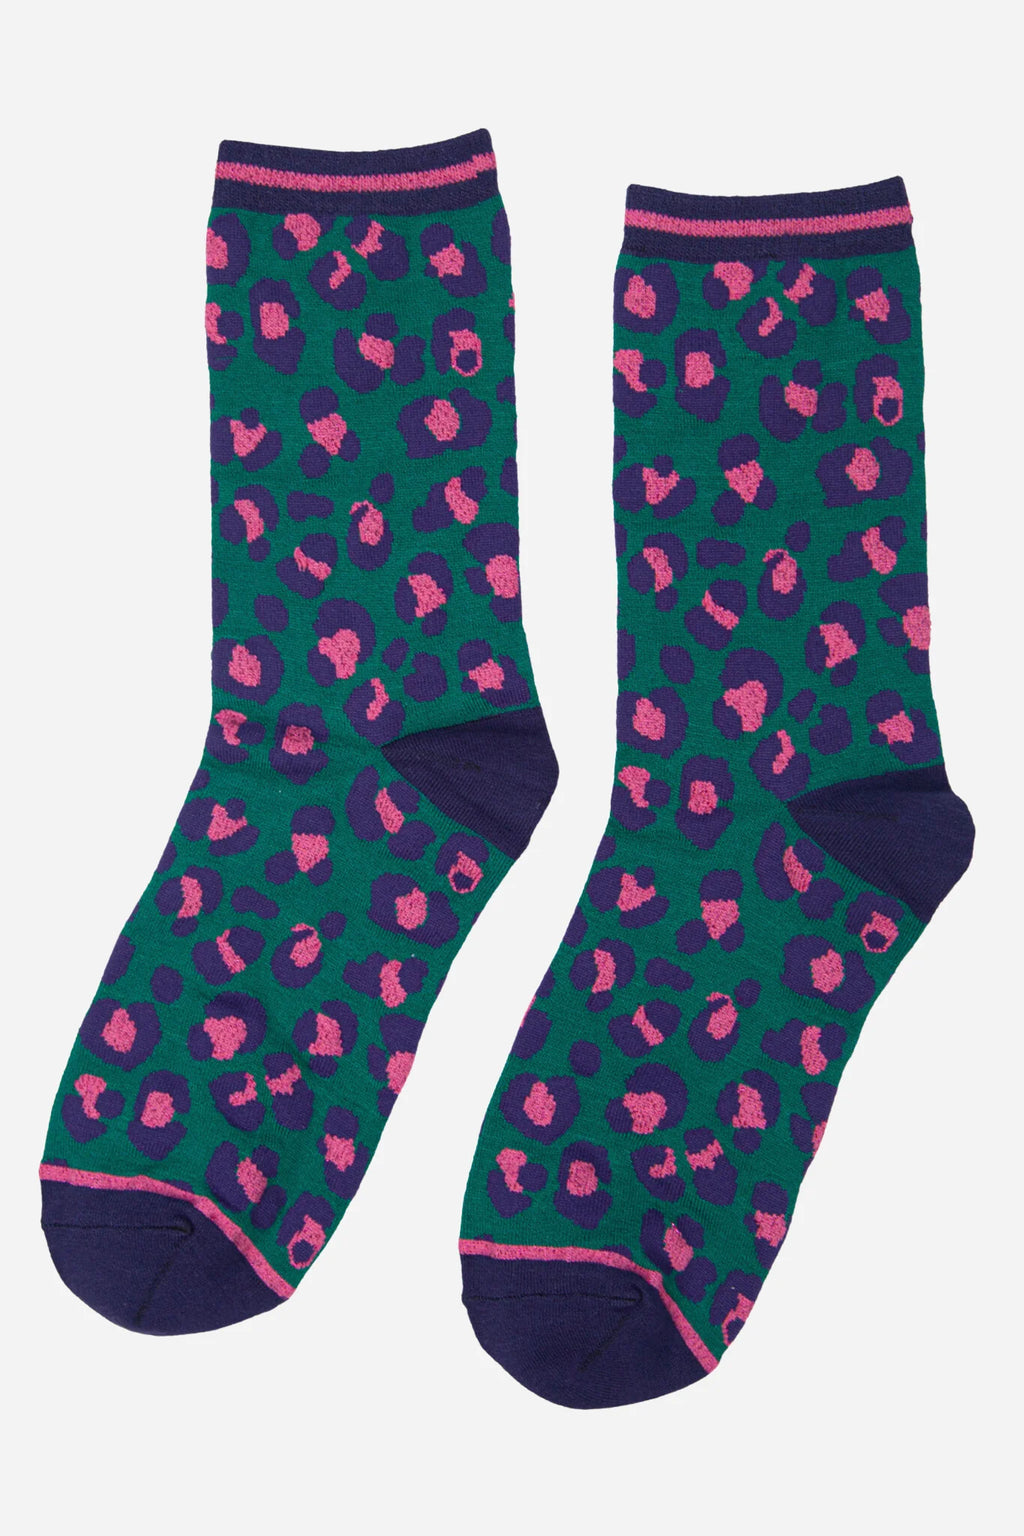 Green & Pink Leopard Print Socks